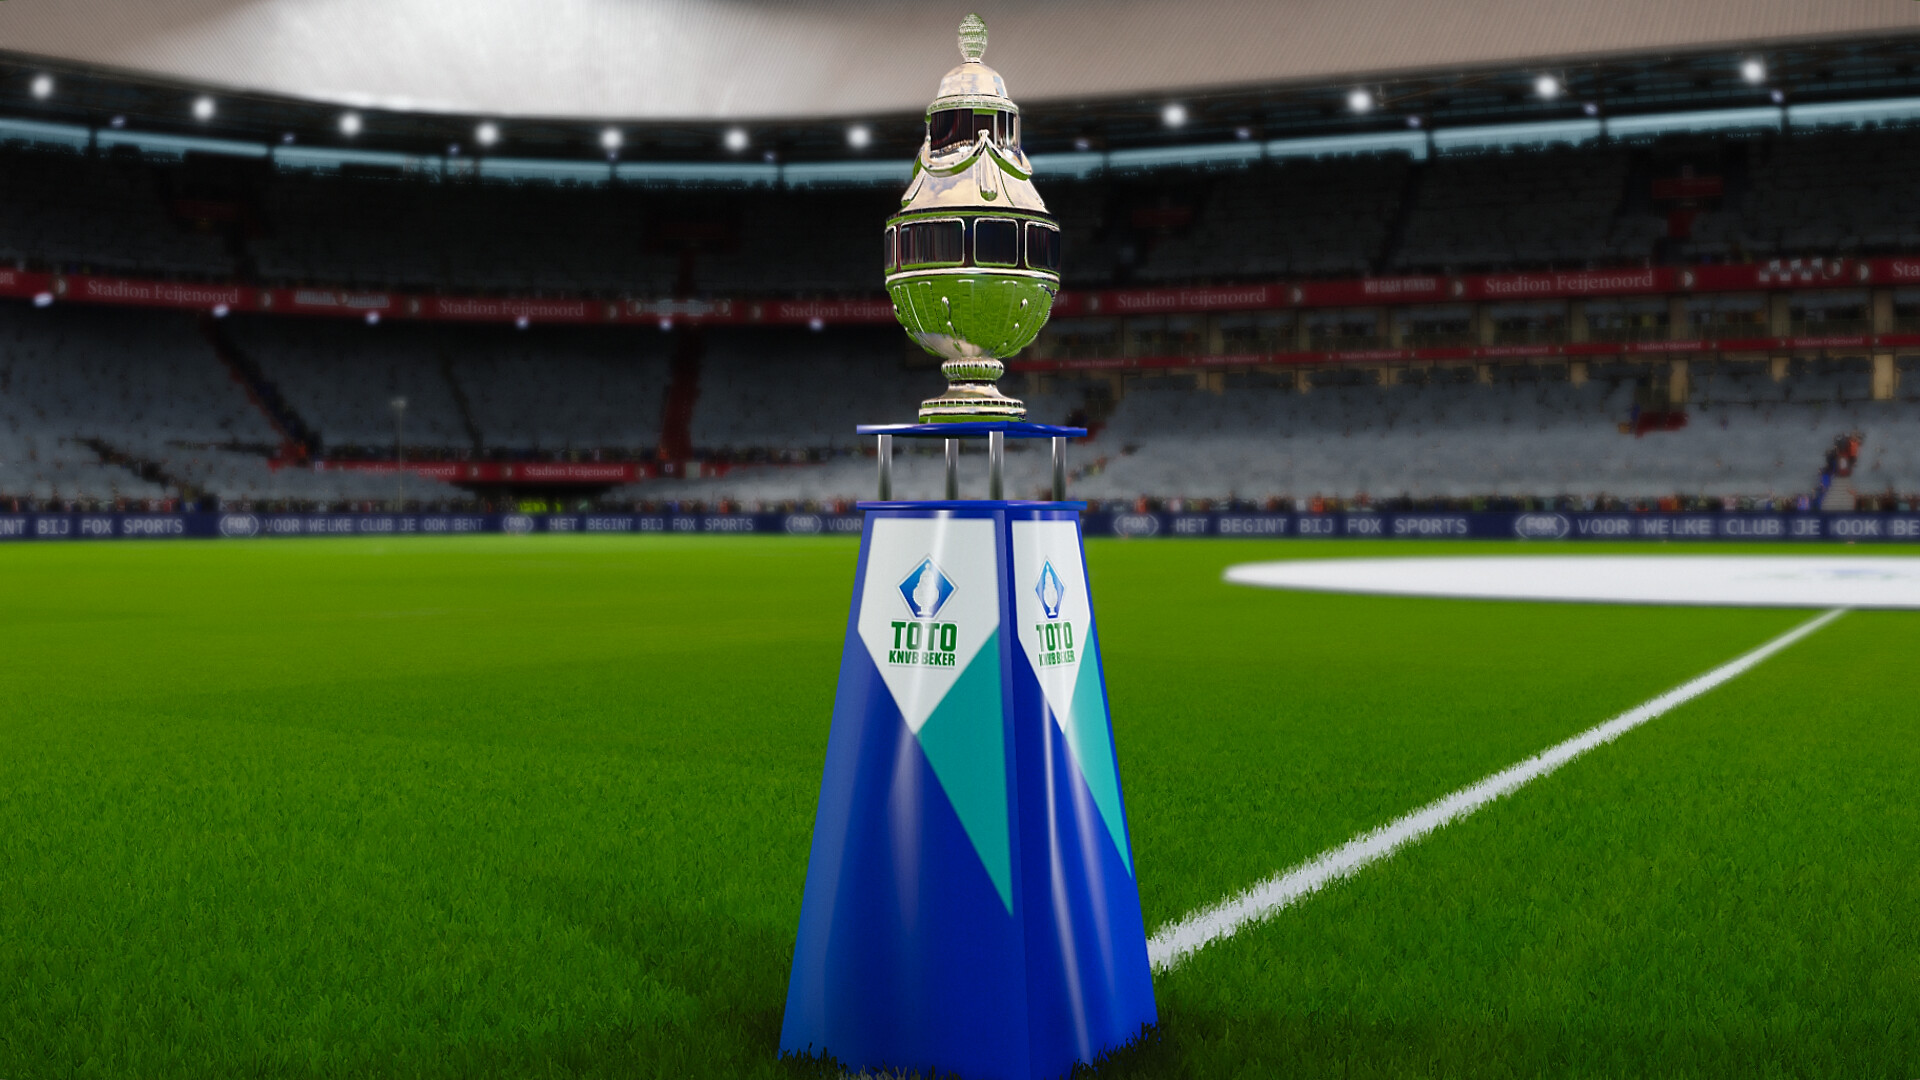 soort veeg Reductor ArtStation - KNVB Beker 3D trophy for PES 2020/21